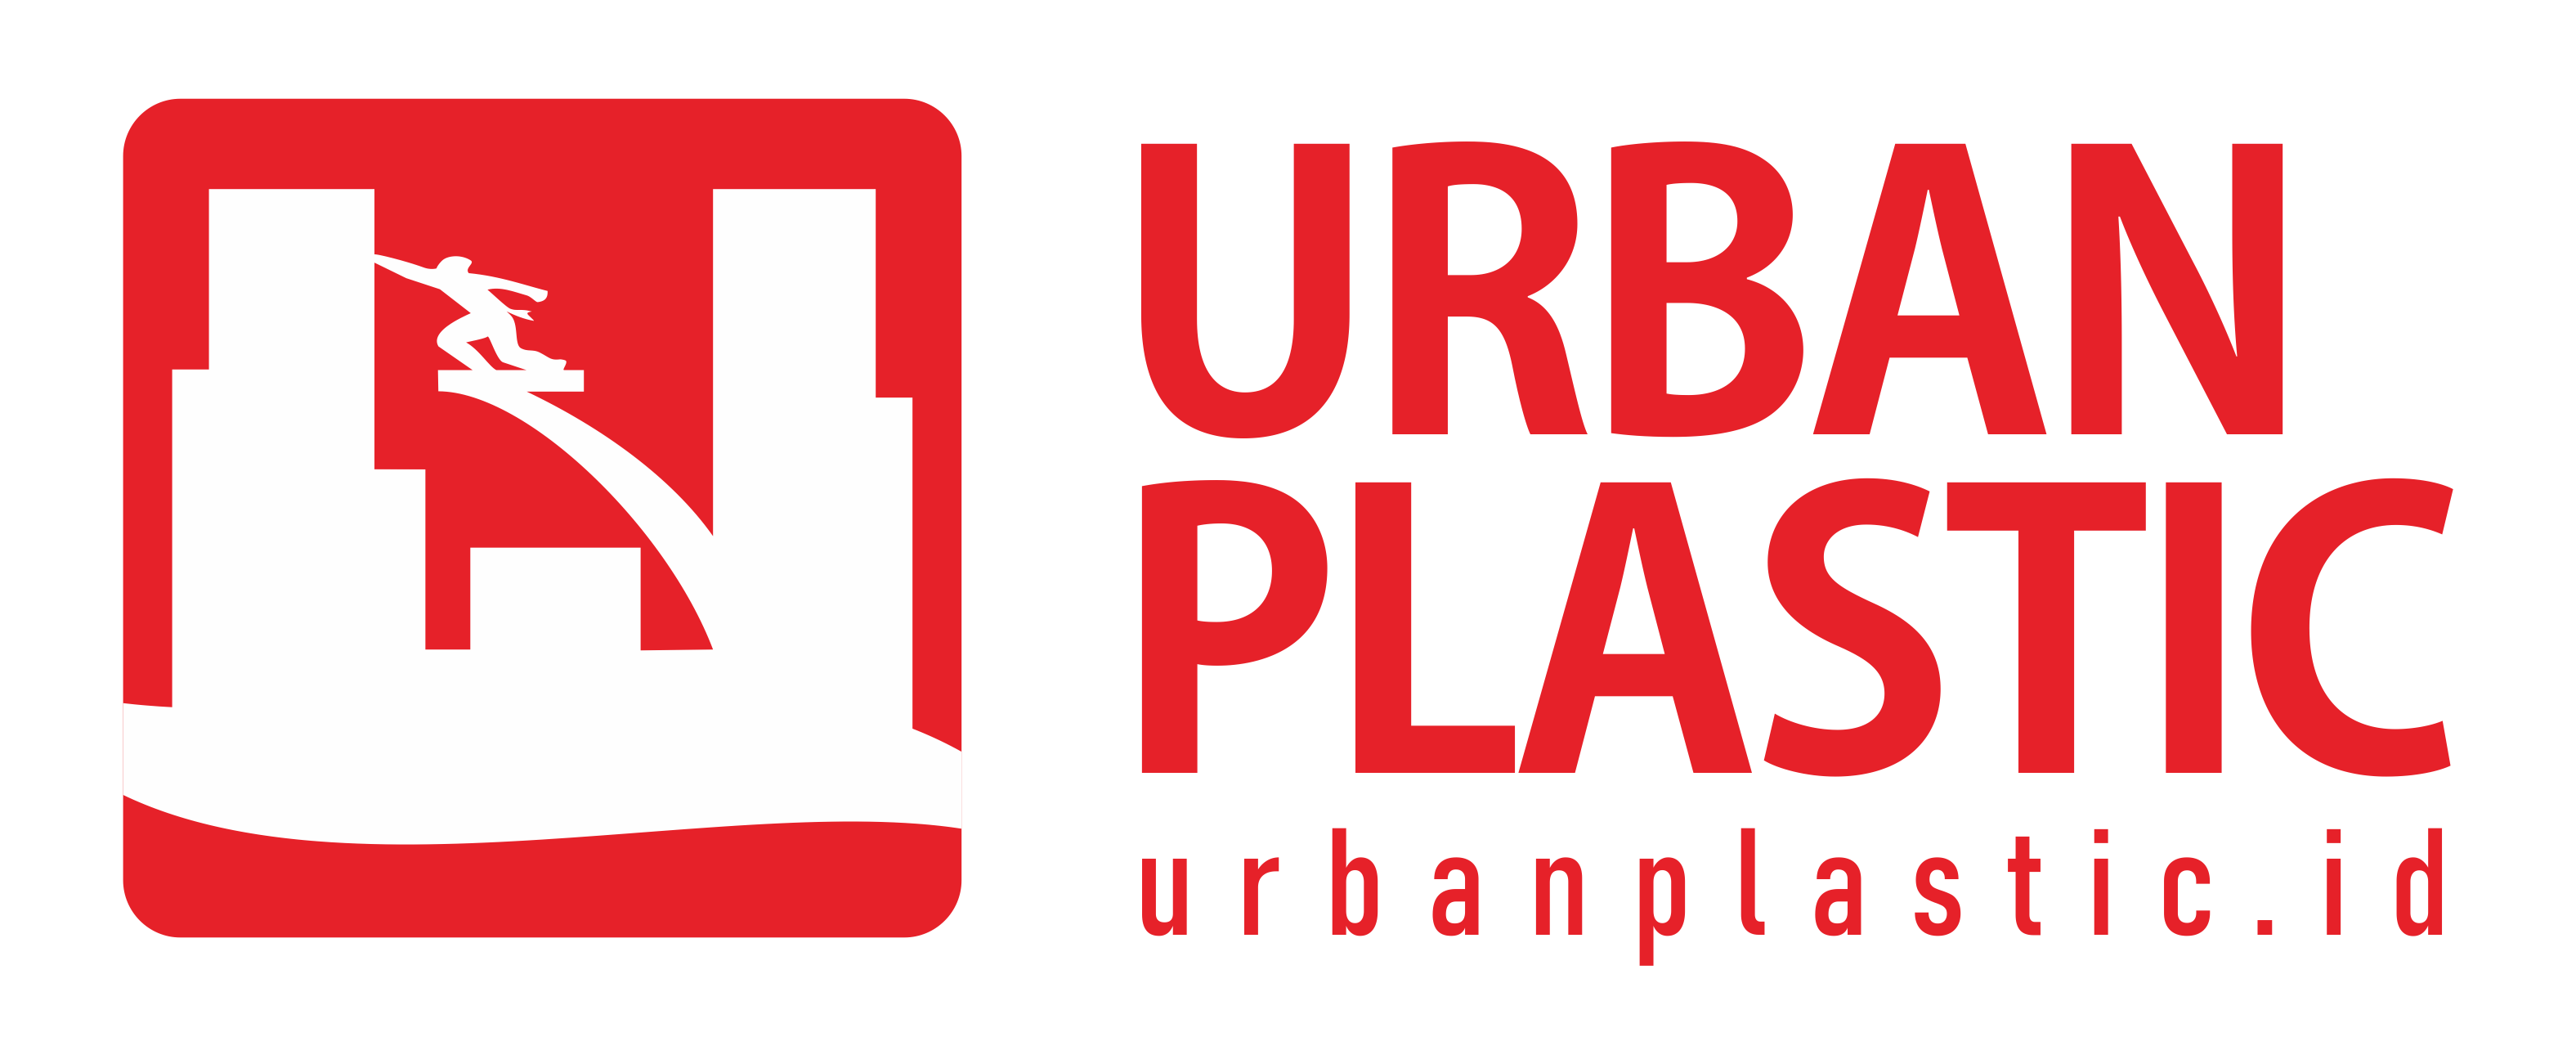 Jual Berbagai Biji Plastik Berkualitas by PT. Urban Plastik Indonesia